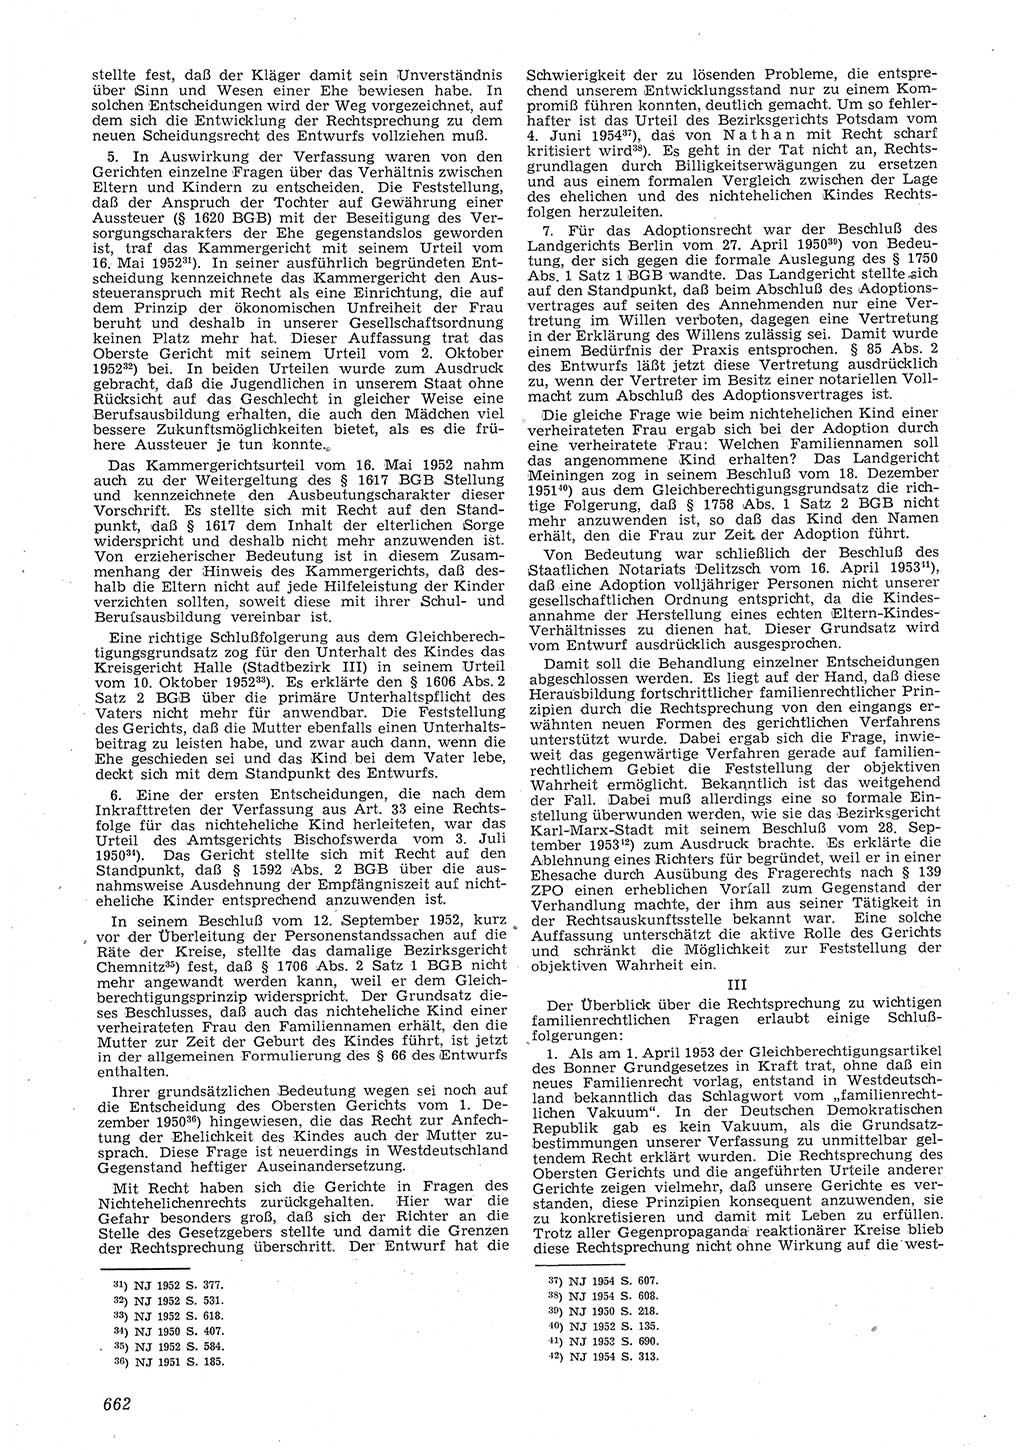 Neue Justiz (NJ), Zeitschrift für Recht und Rechtswissenschaft [Deutsche Demokratische Republik (DDR)], 8. Jahrgang 1954, Seite 662 (NJ DDR 1954, S. 662)